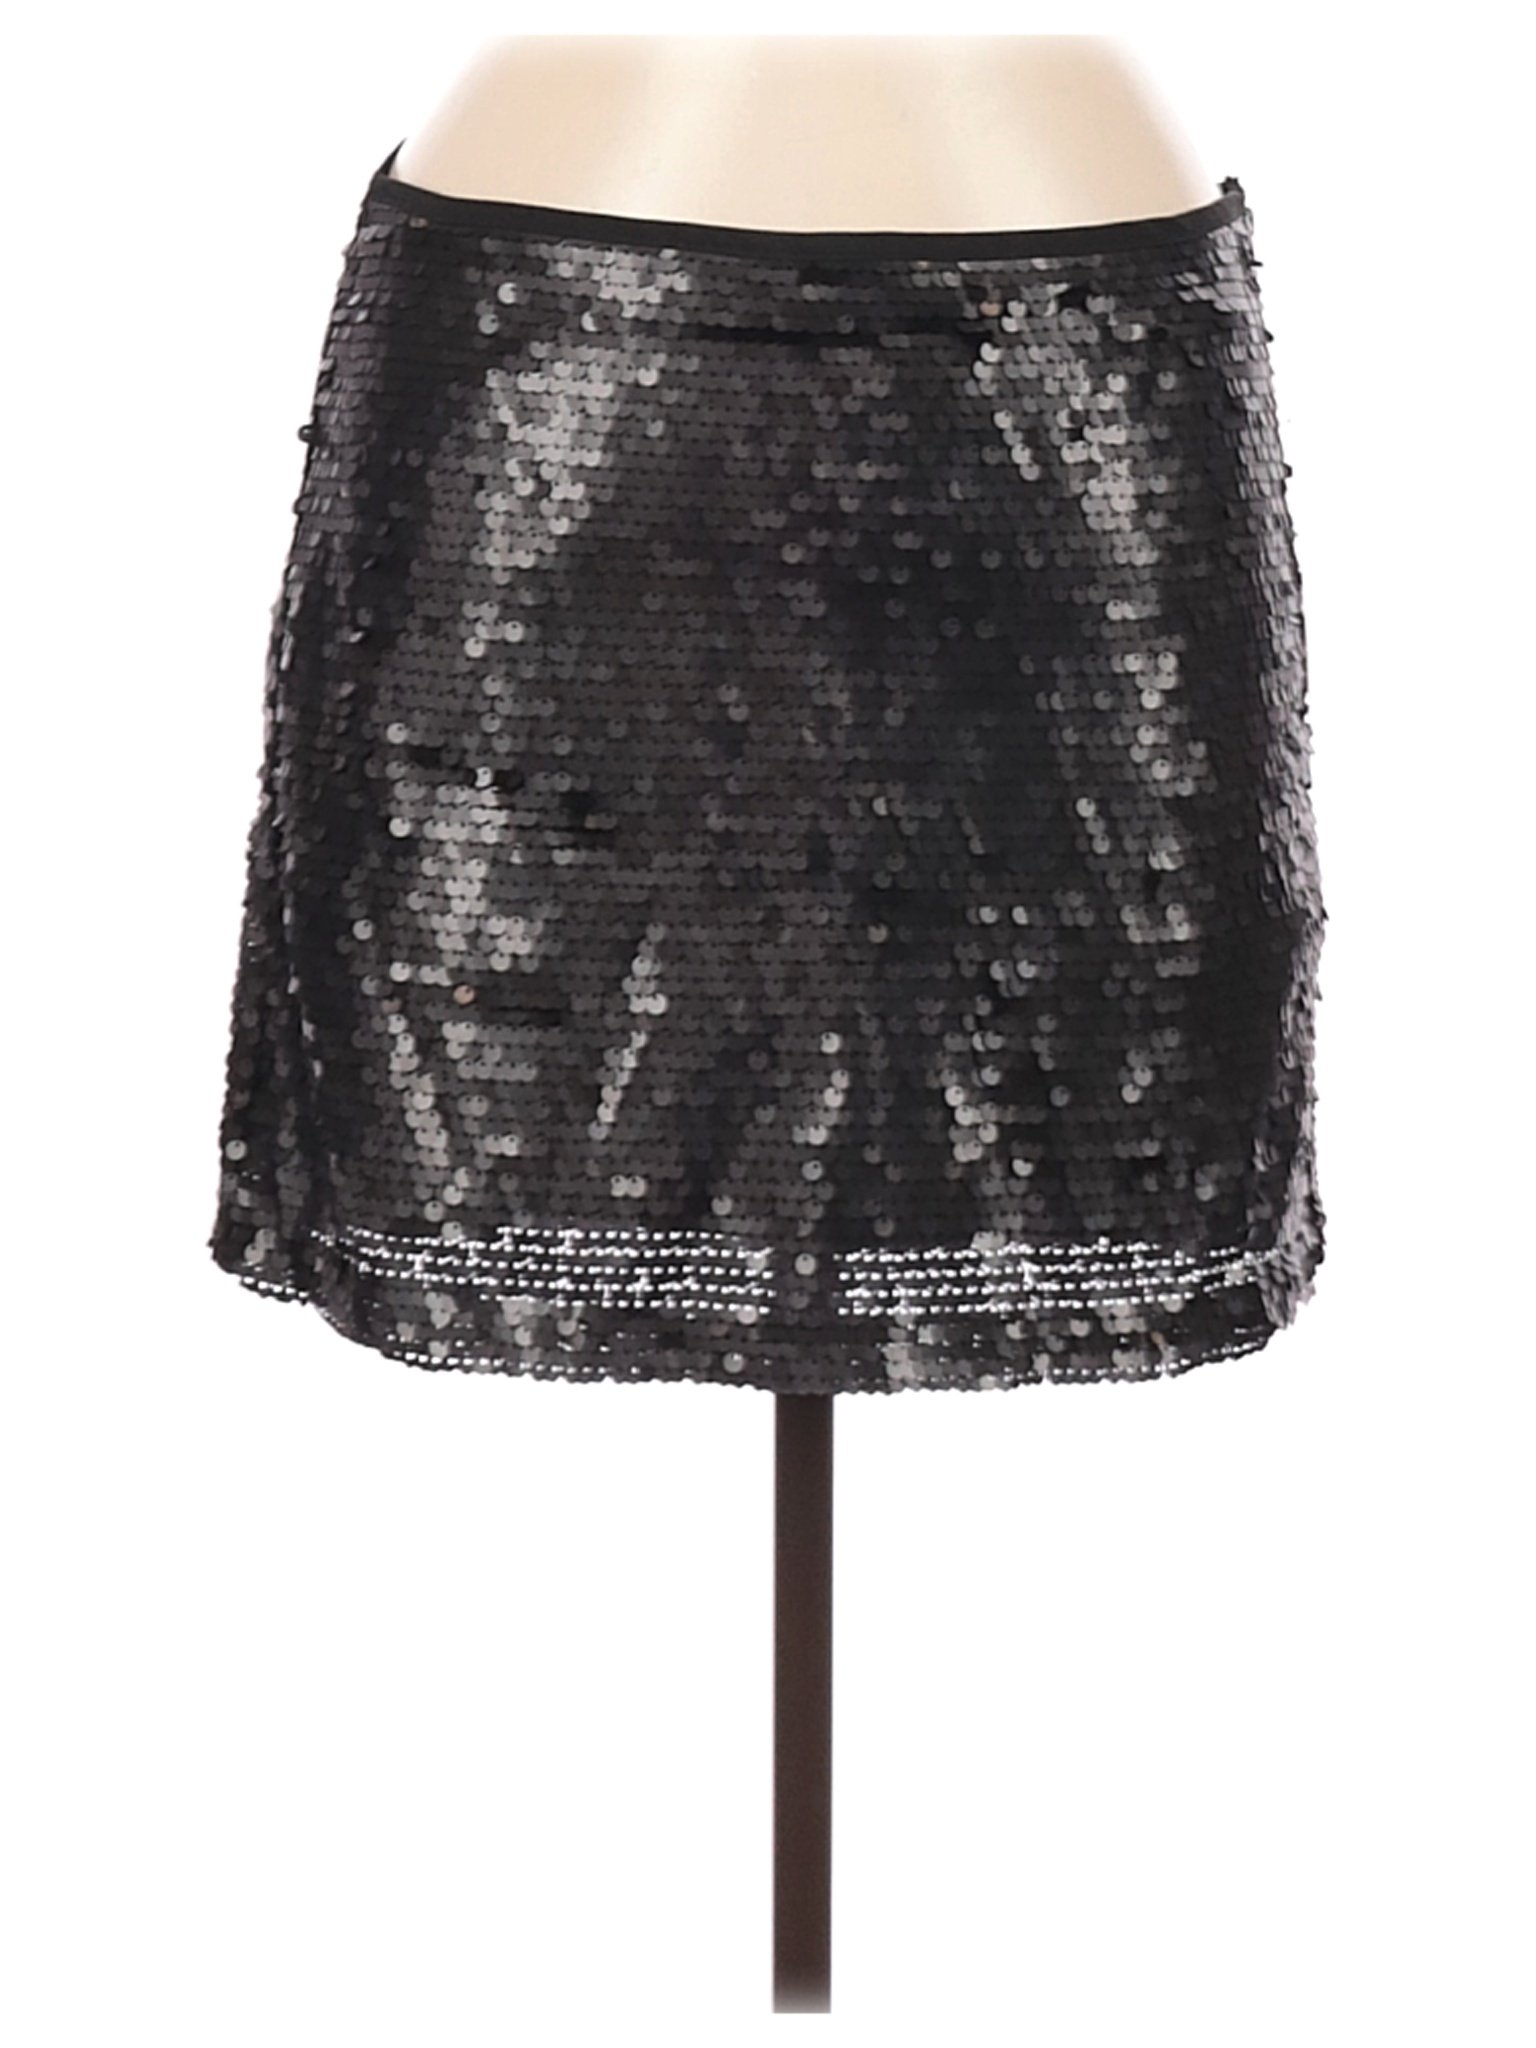 NWT Zara Basic Women Black Formal Skirt S | eBay